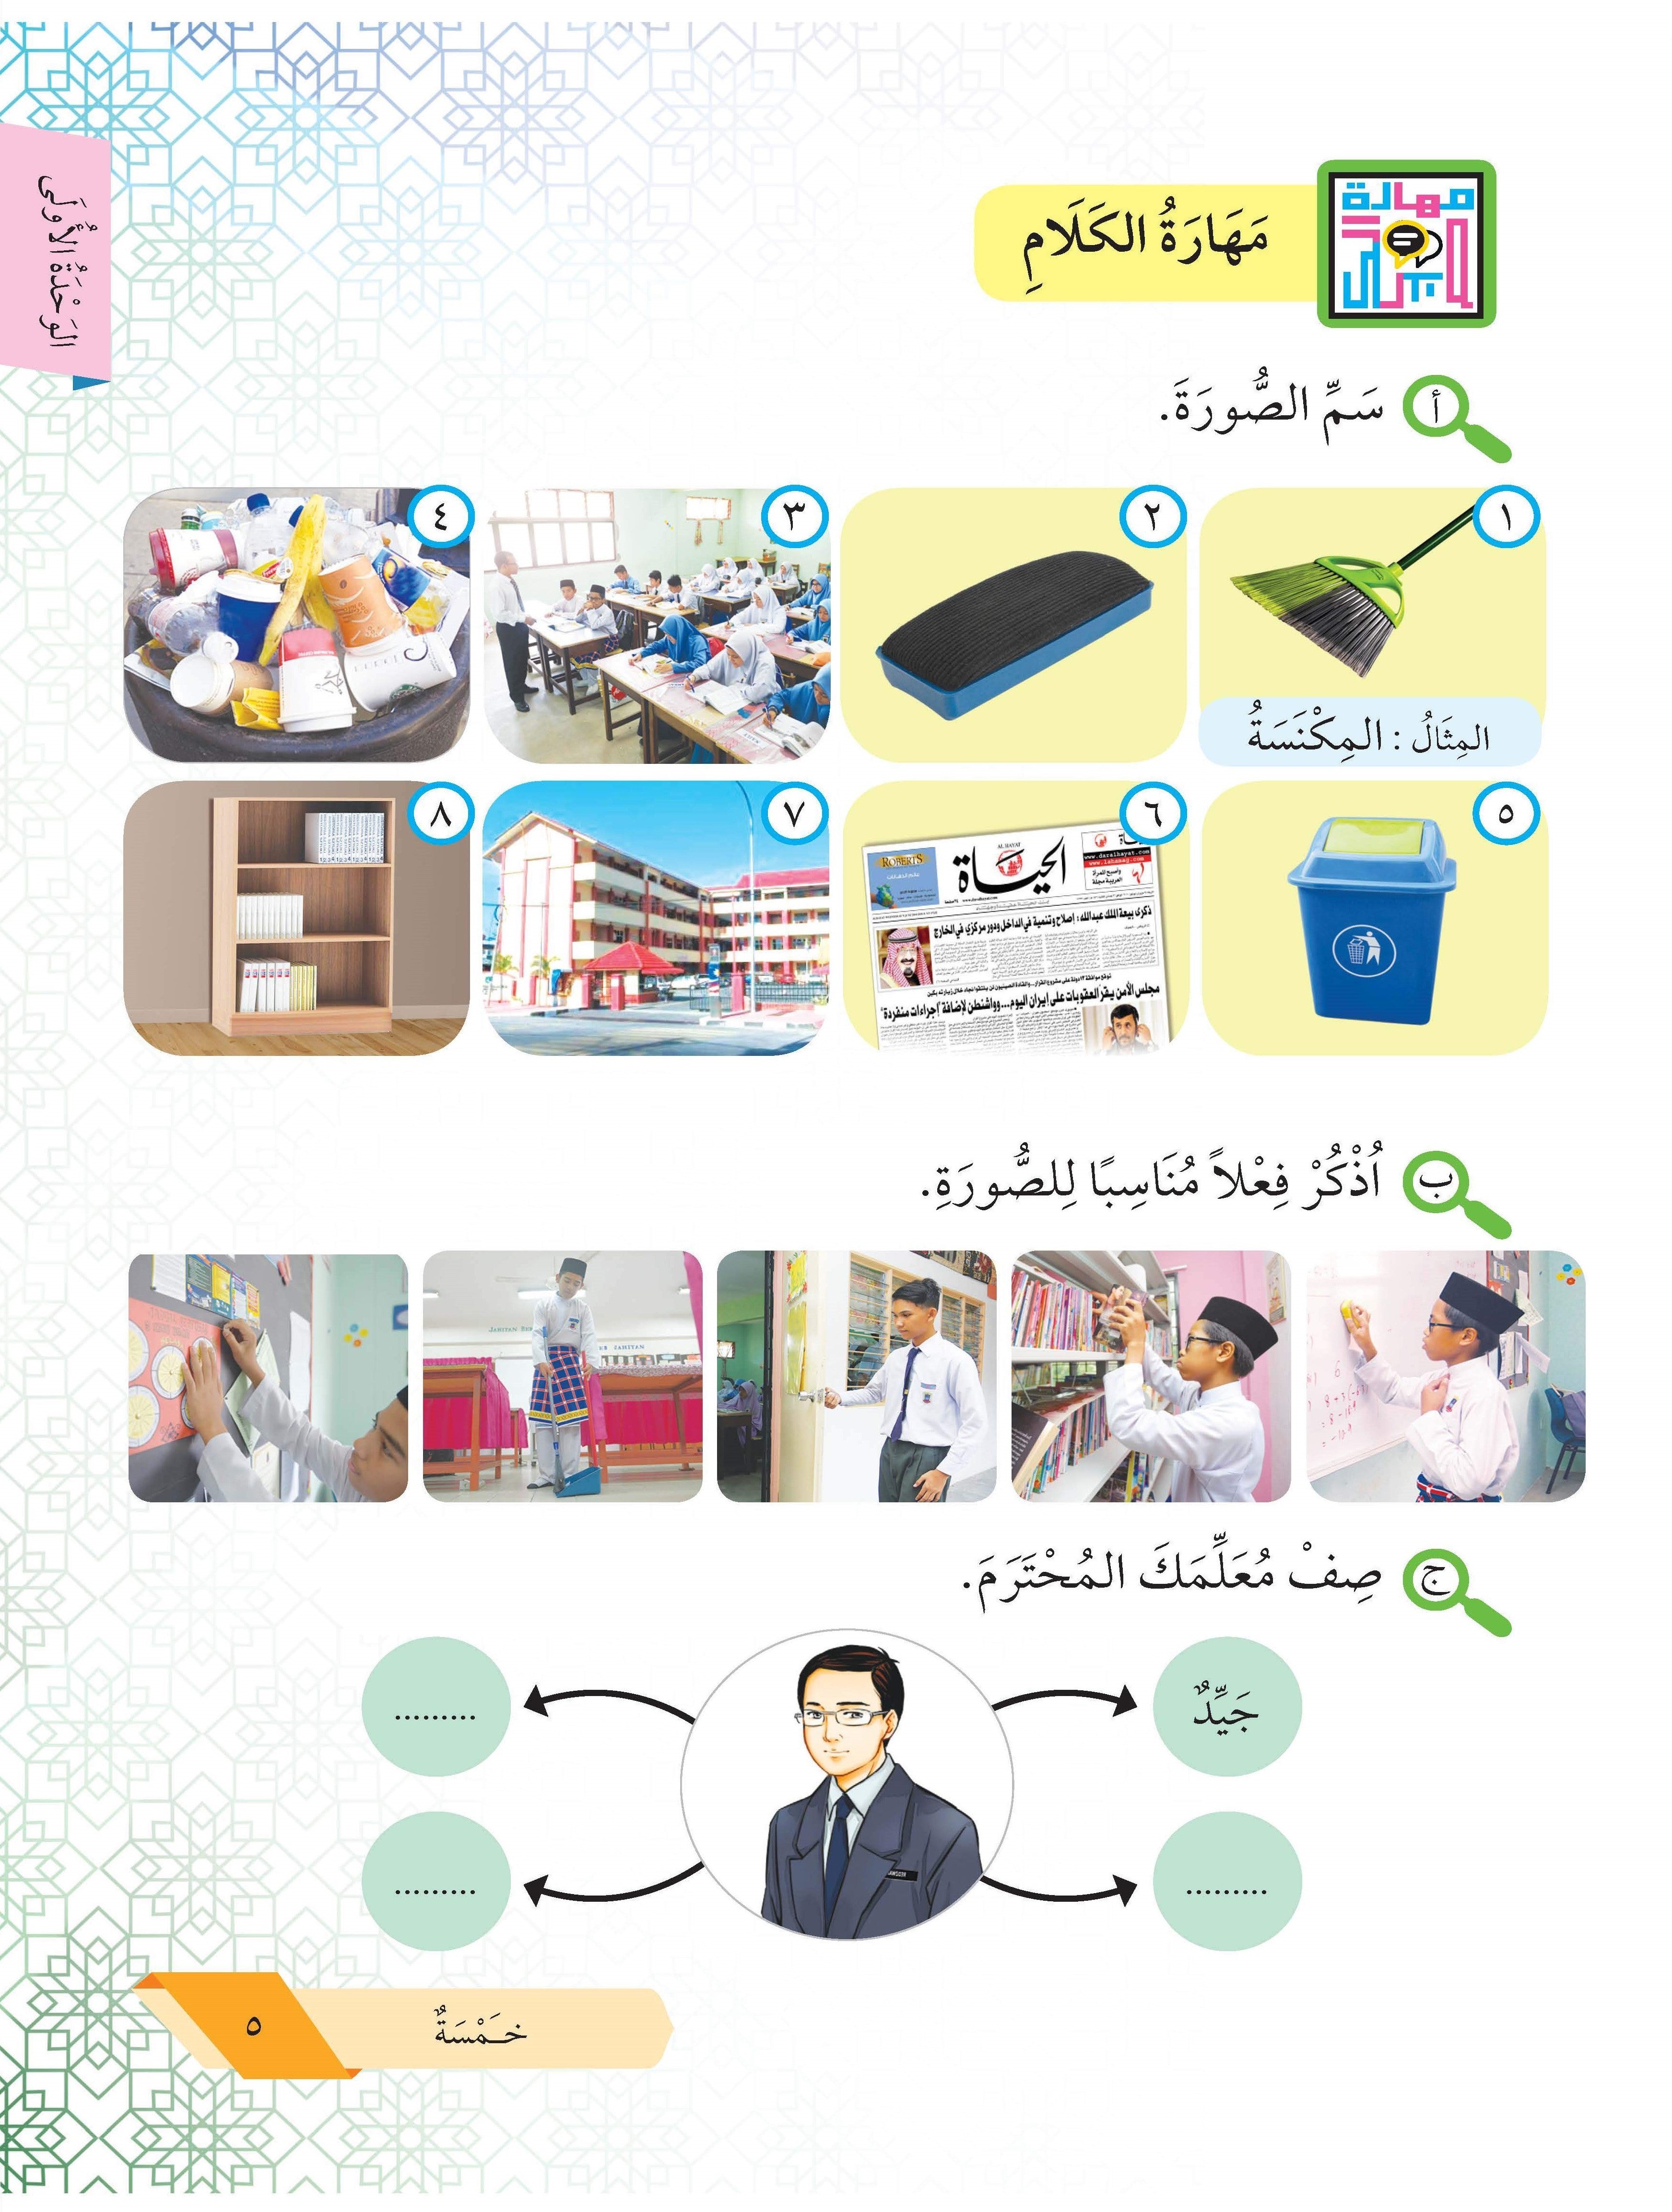 Bahasa Arab Tingkatan 1 - (FT211099)